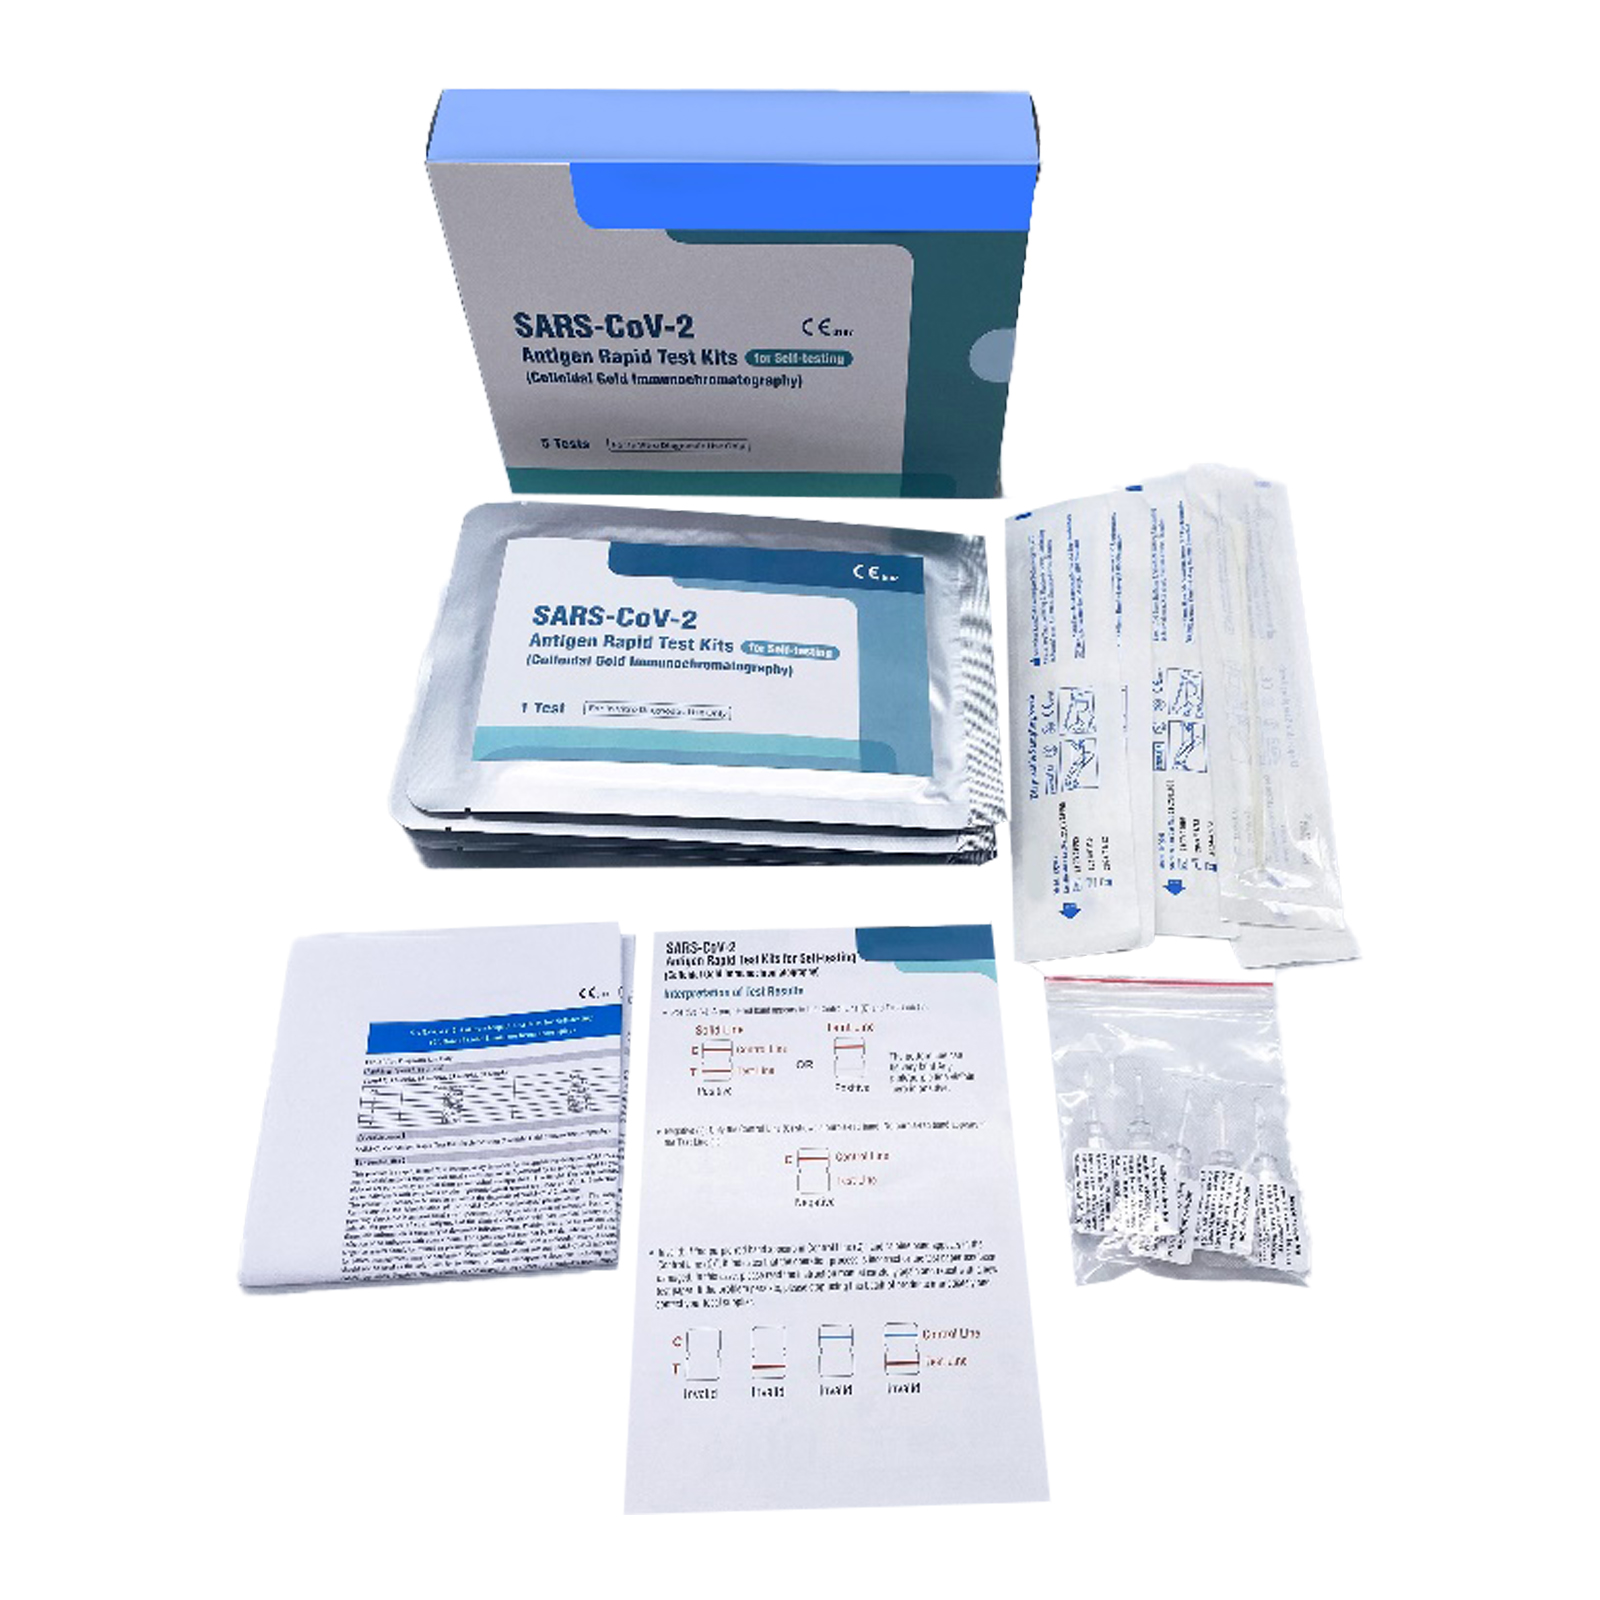 COVID-CARD-360 Tarjeta de autodiagnóstico CE del antígeno SARS-CoV-2 (bastoncillo), en paquetes de 5 unidades en una caja, 360 unidades en una caja de cartón.